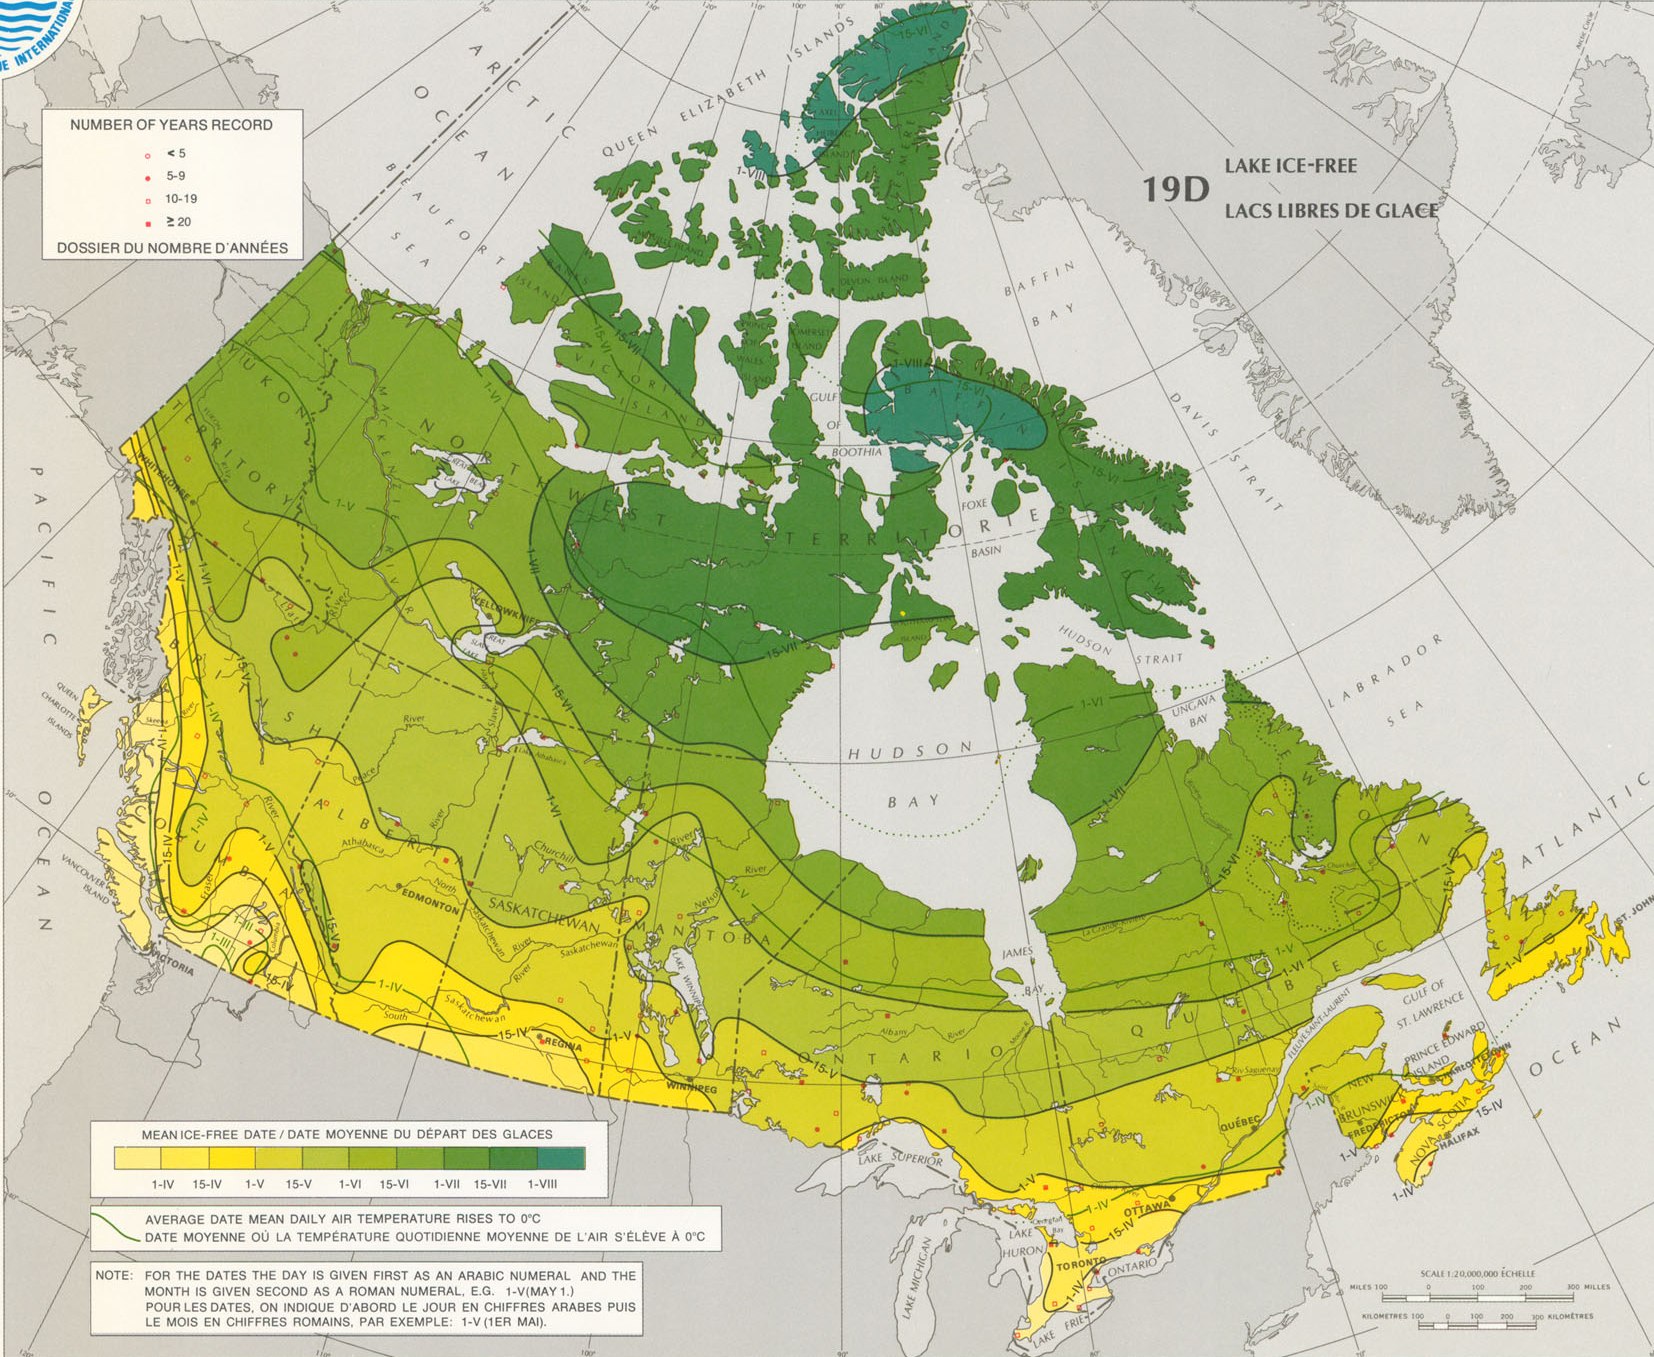 Природные зоны канады занимающие наибольшую площадь